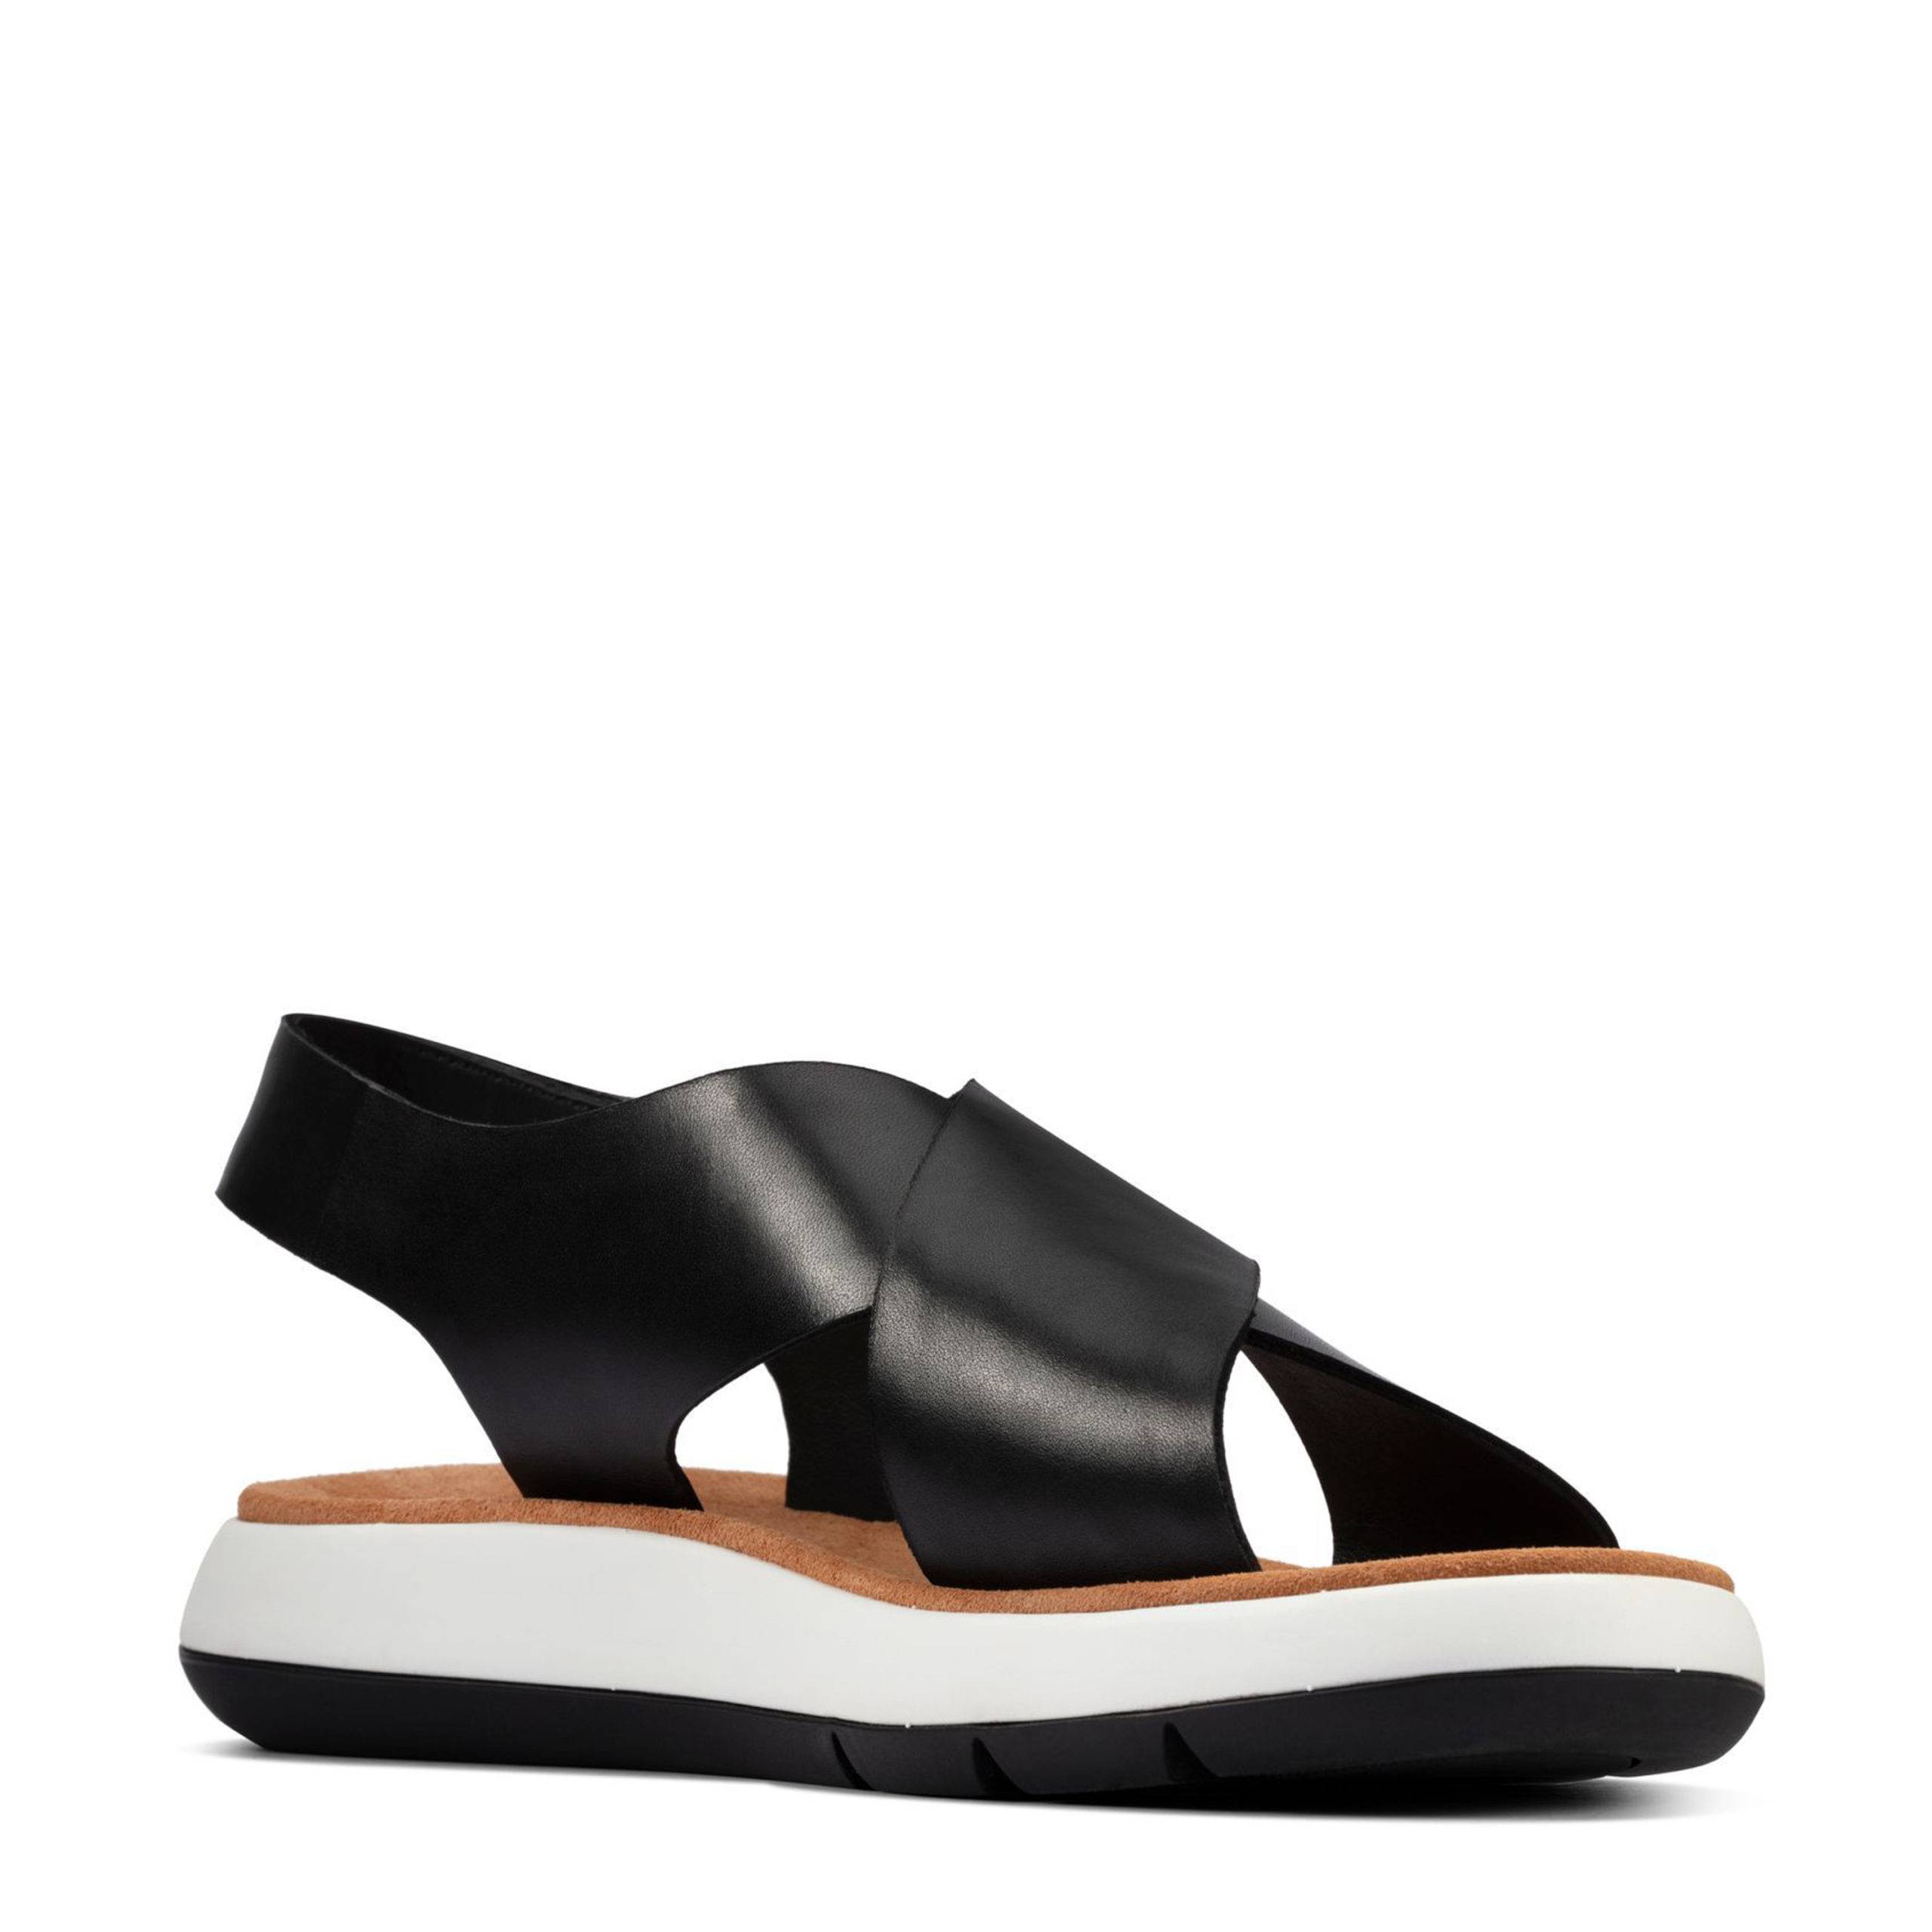 Sandalia de la marca Clarks, modelo Jemsa Cross  en color negro. Sandalia de piel estilo sport con diseño cruzado. Cómoda y transpirable en contacto con la piel, suela de goma de contenido reciclado con hendiduras de flexión.